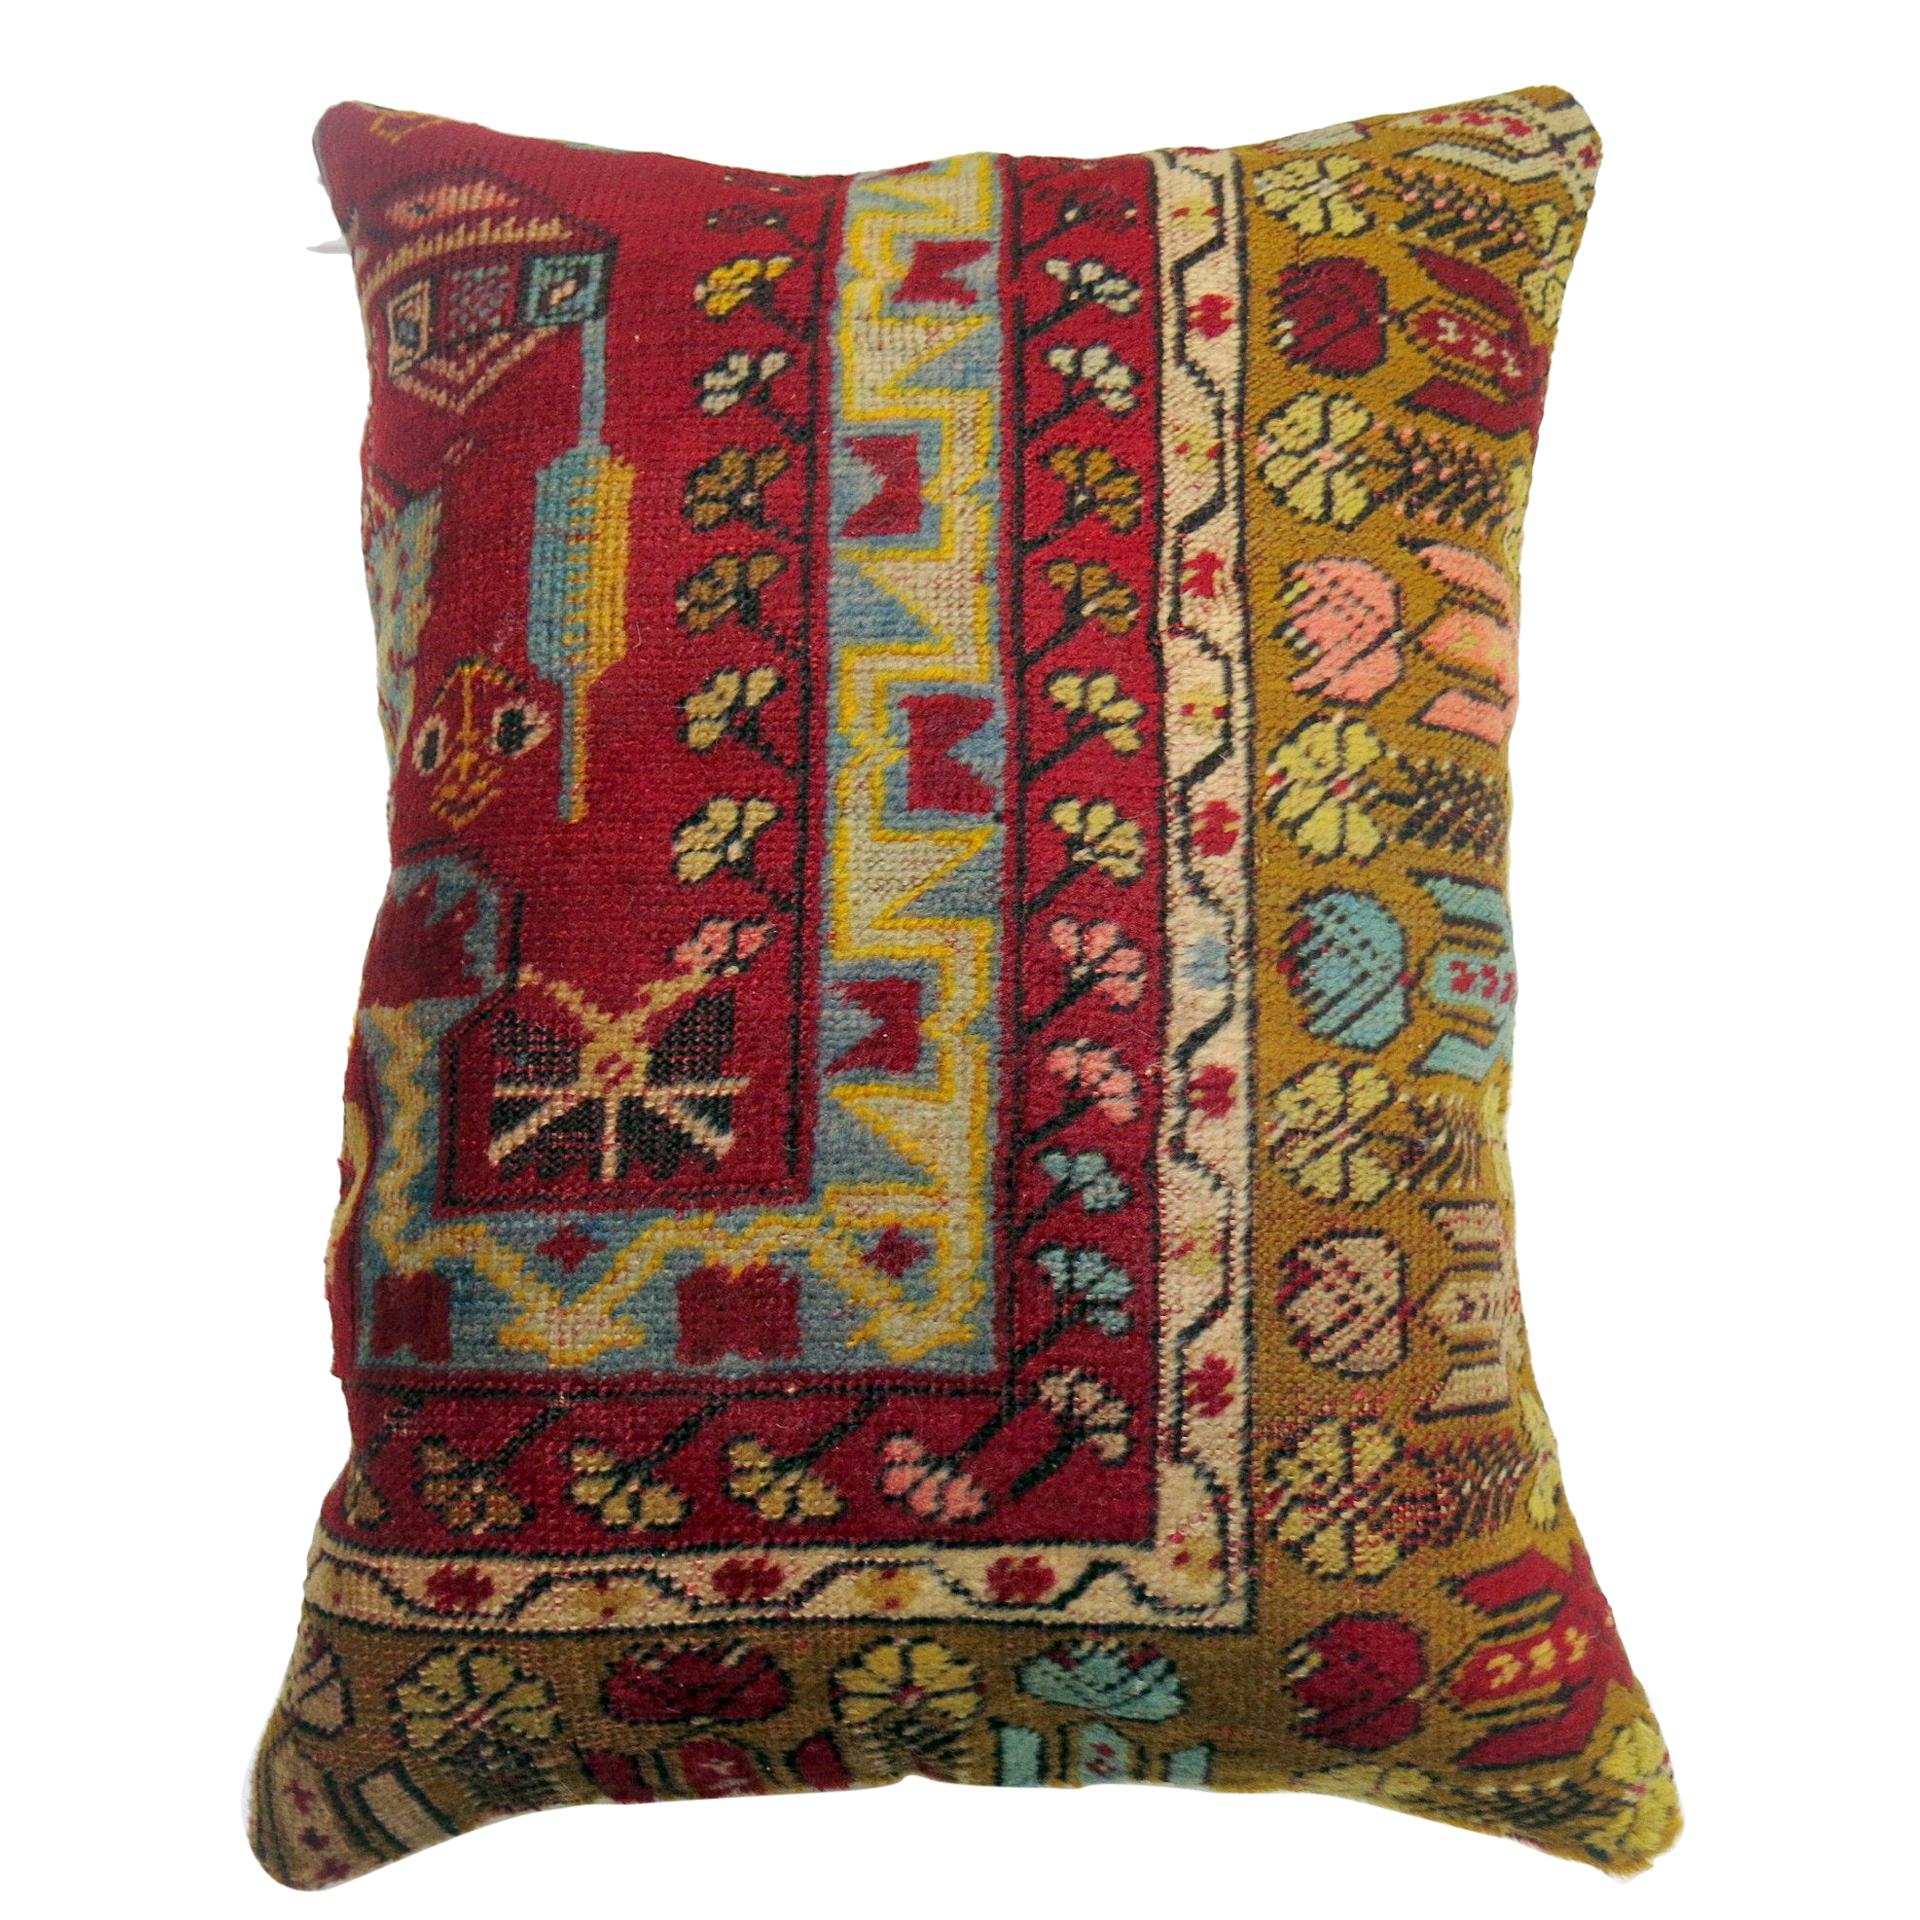 Großes farbenfrohes Kissen mit türkischer Teppicheinfassung